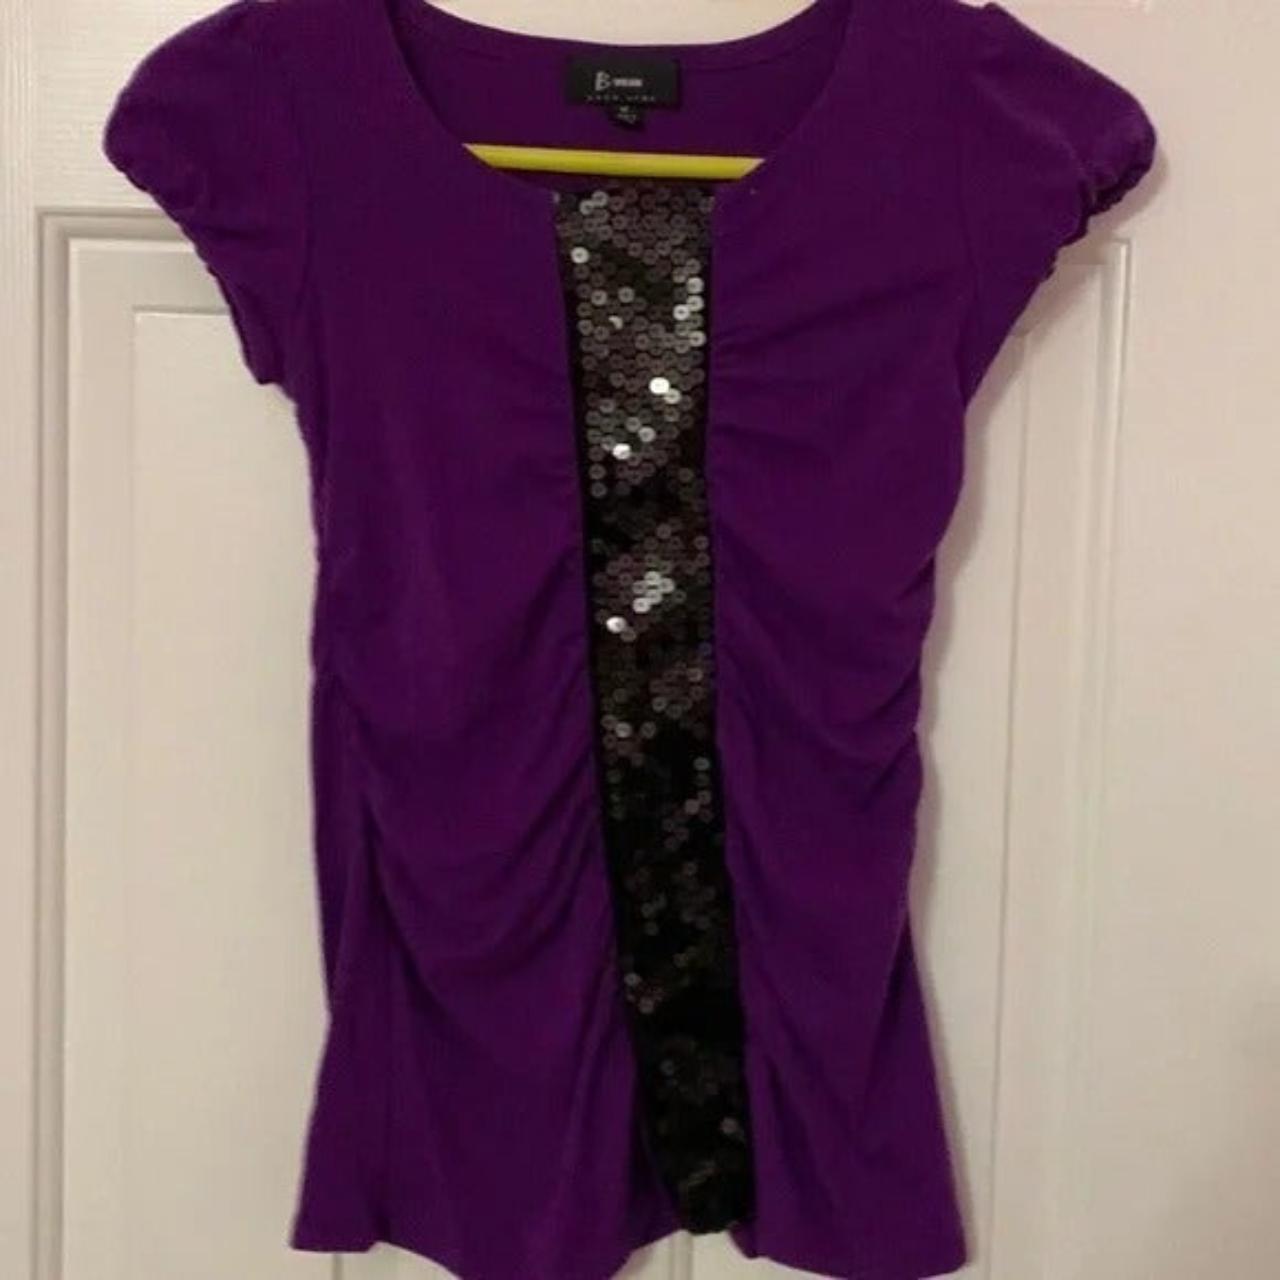 B wear byer girl size medium purple top Width... - Depop